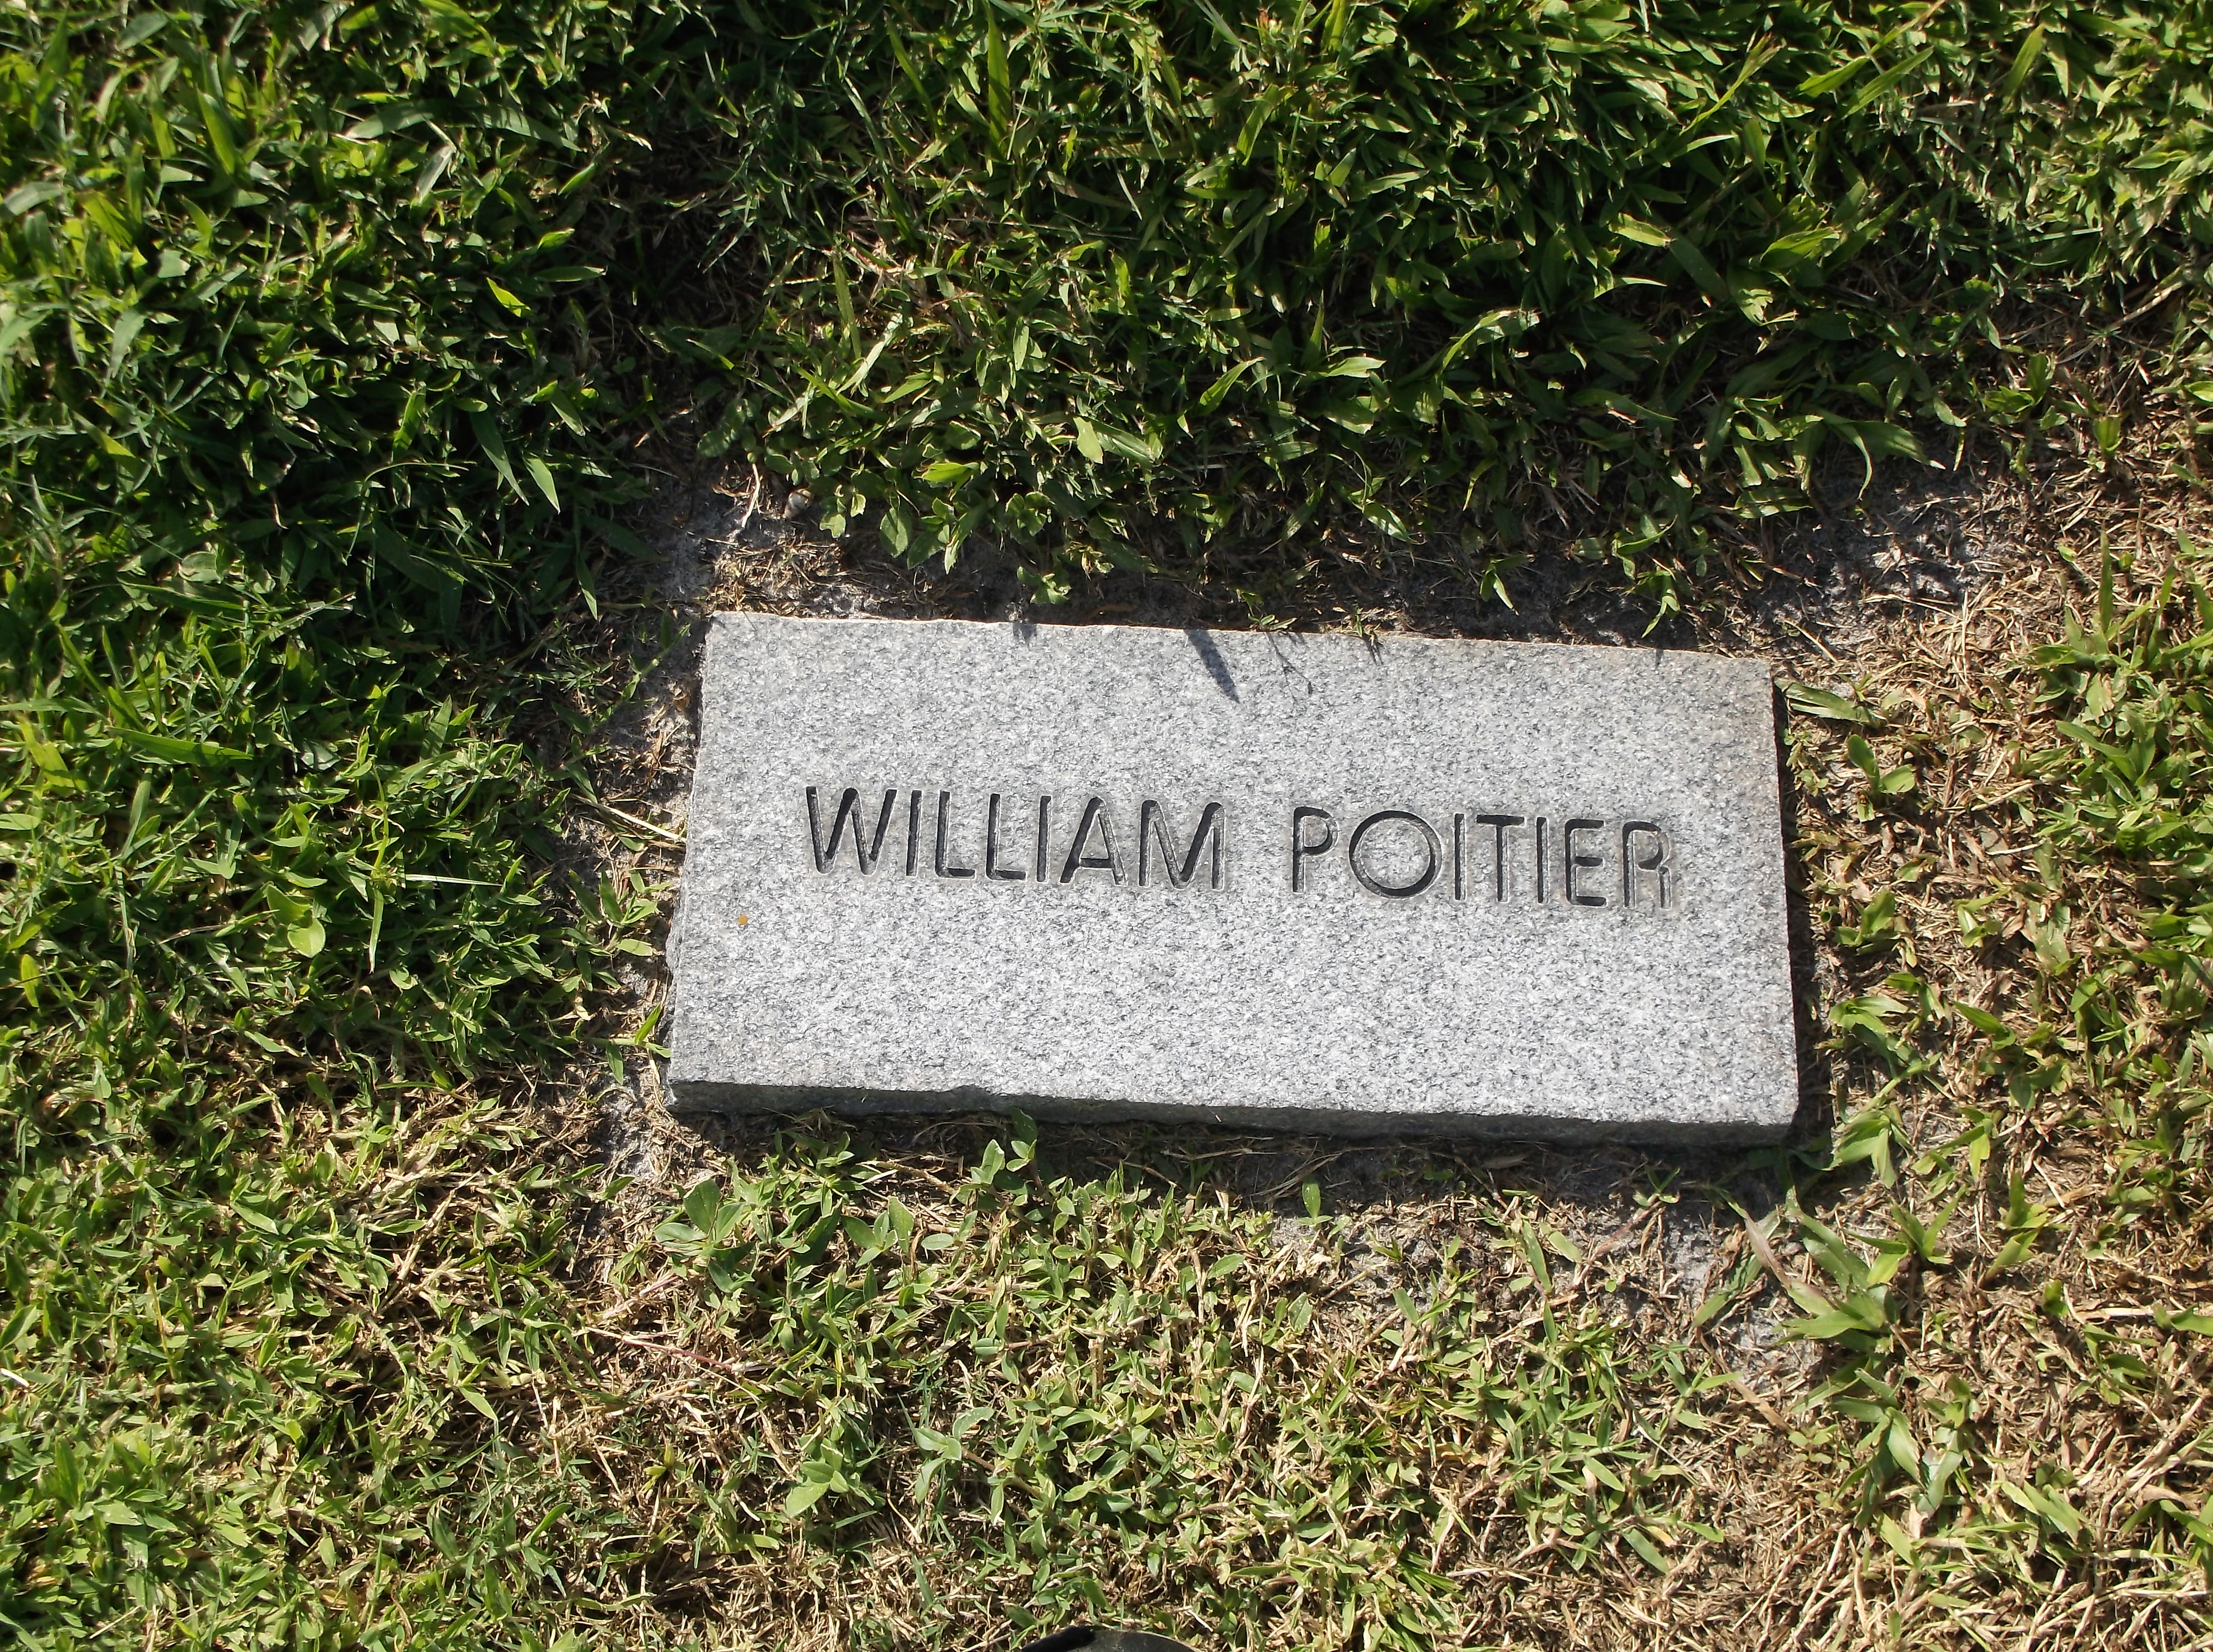 William Poitier